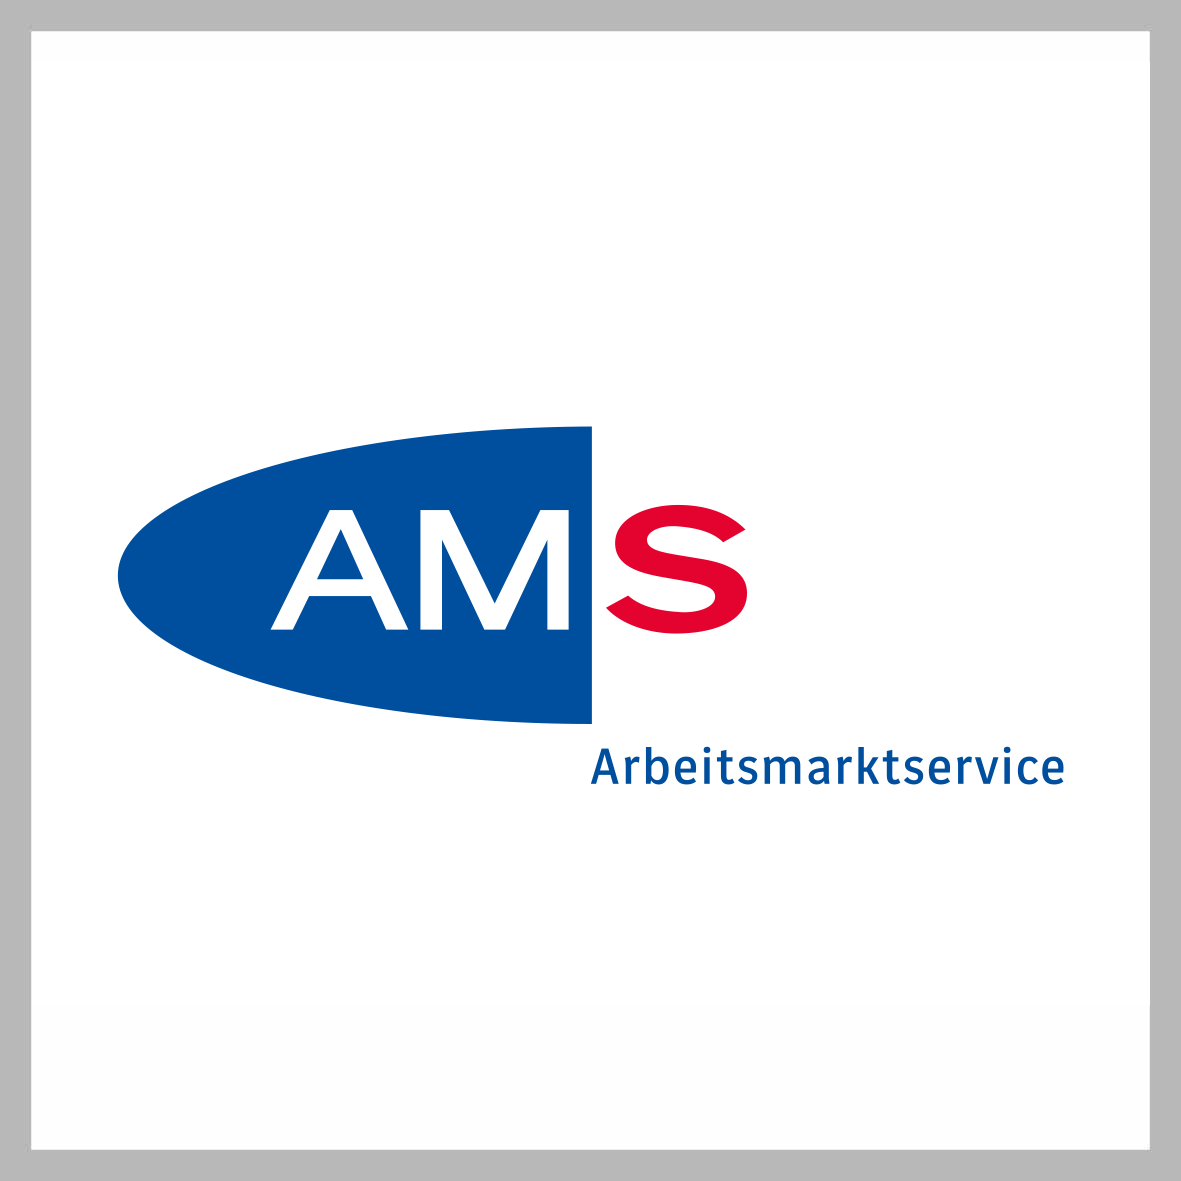 Logo AMS in Farbe auf weiß, quadratisch, grau umrandet